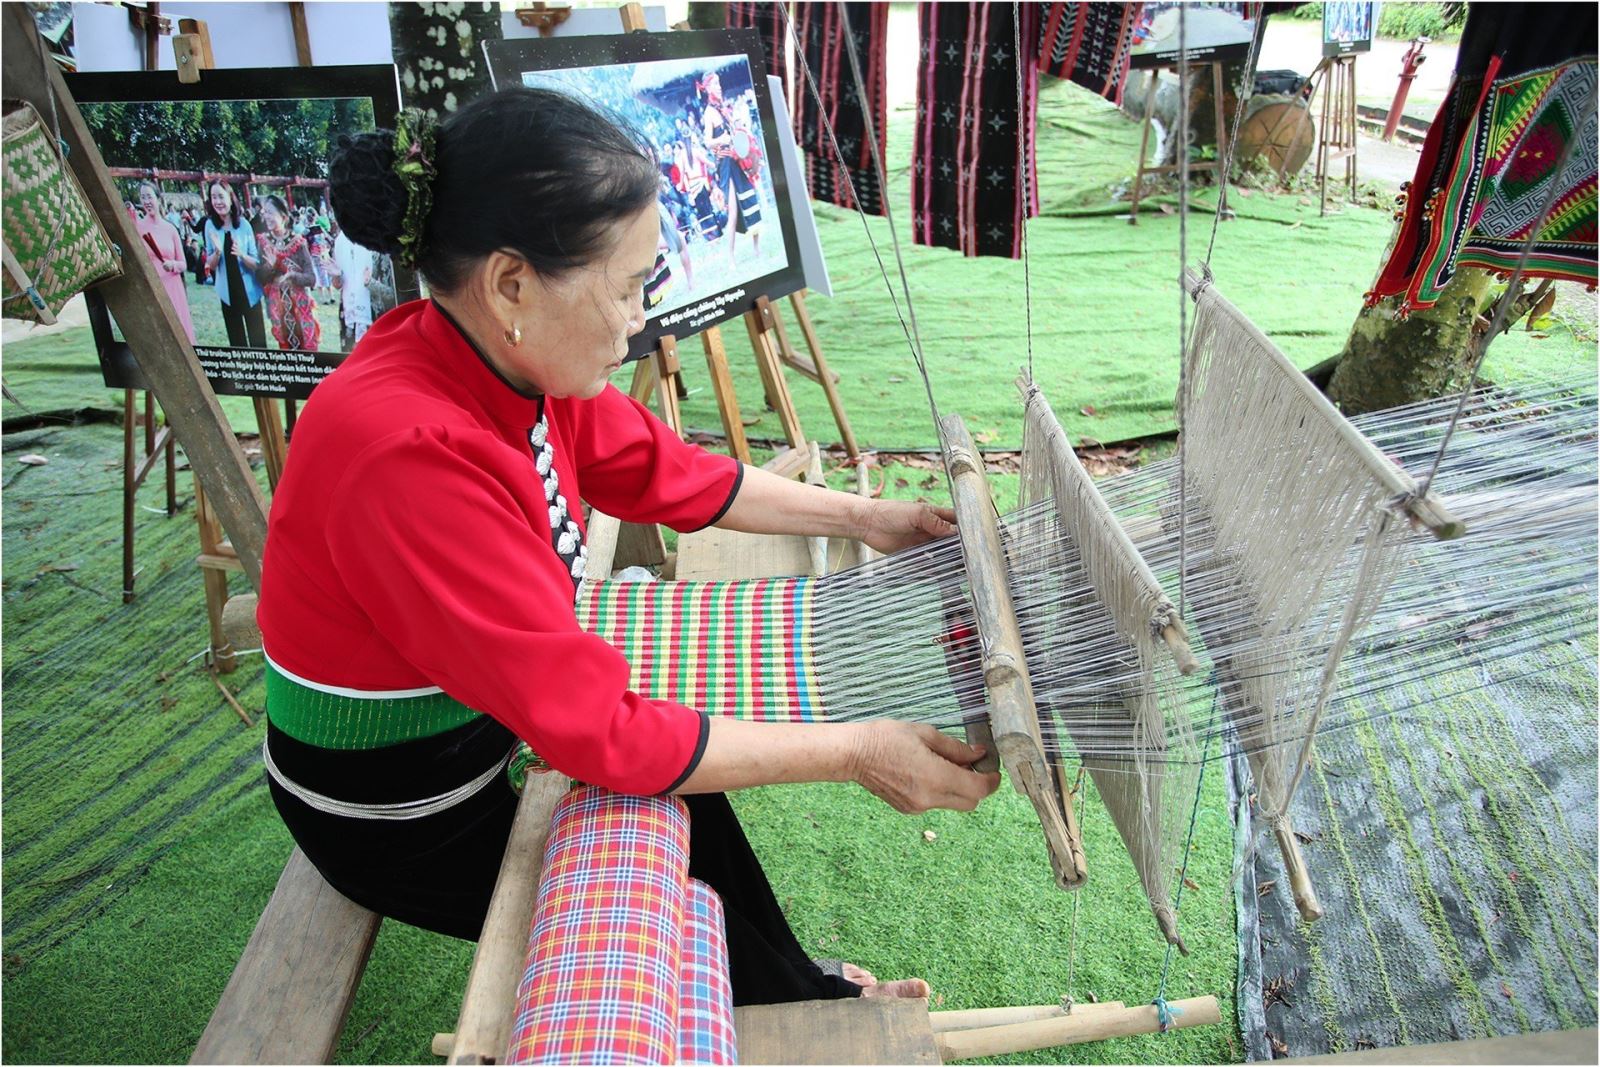 Dệt thổ cẩm là một trong những nghề truyền thống xuất hiện ở nhiều vùng miền trên khắp đất nước Việt Nam, mỗi dân tộc đều tạo ra những nét độc đáo riêng, từ chất liệu, hoa văn, màu sắc, cách dệt, sản phẩm dệt… Đối với người Thái, thổ cẩm không chỉ là sản phẩm dùng trong may mặc thường ngày, mà còn chứa đựng trong đó sự khéo léo của người phụ nữ, sự sáng tạo và quan niệm về nhân sinh quan của đồng bào.